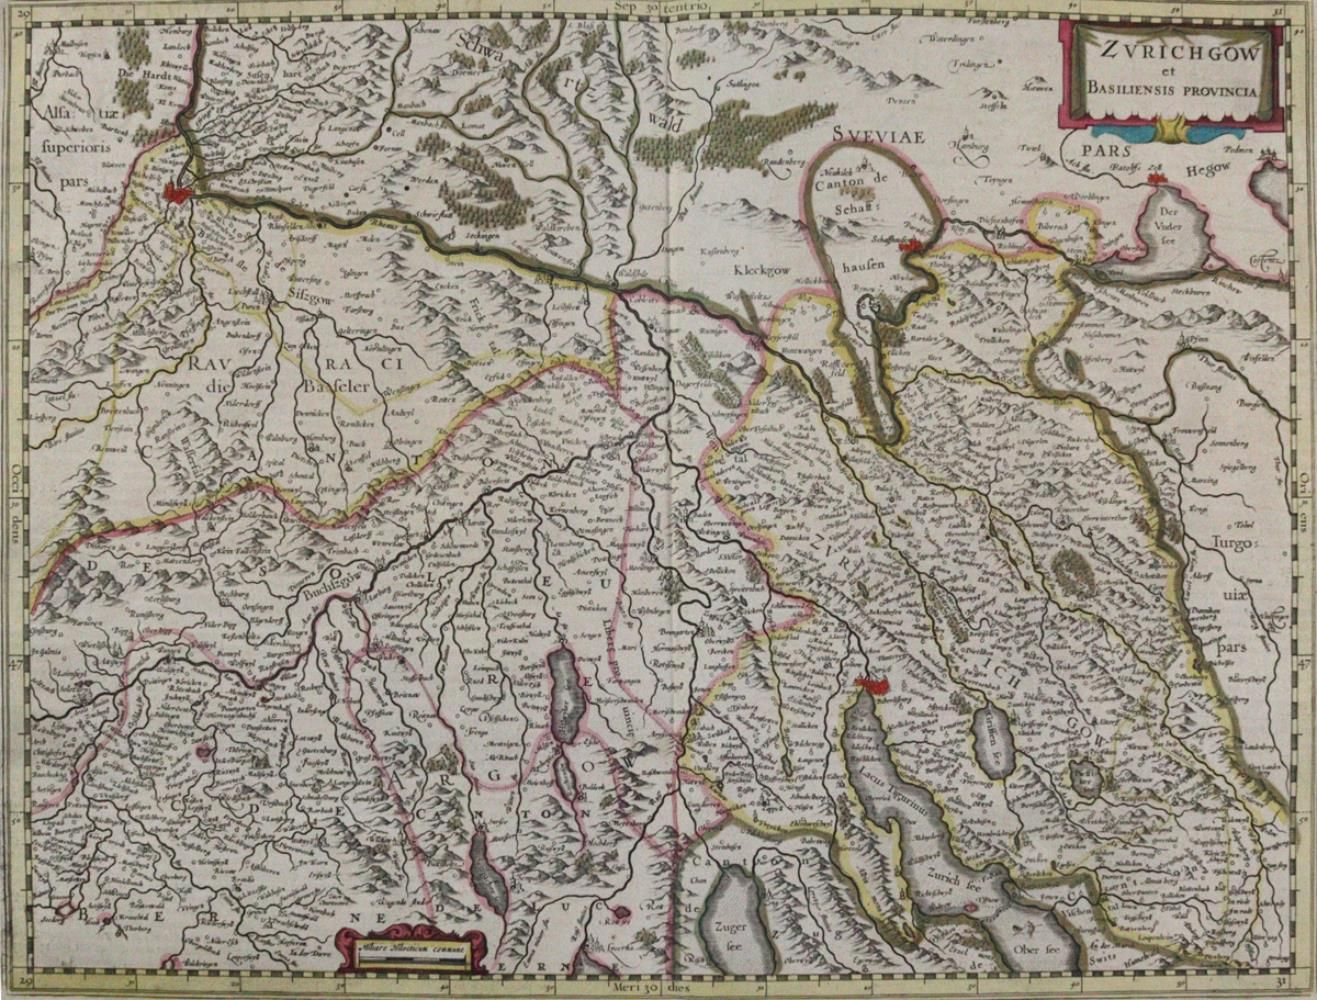 Zürich. "Zurichgow et Basiliensis provincia". Coloriage ancien. Carte gravée sur&hellip;